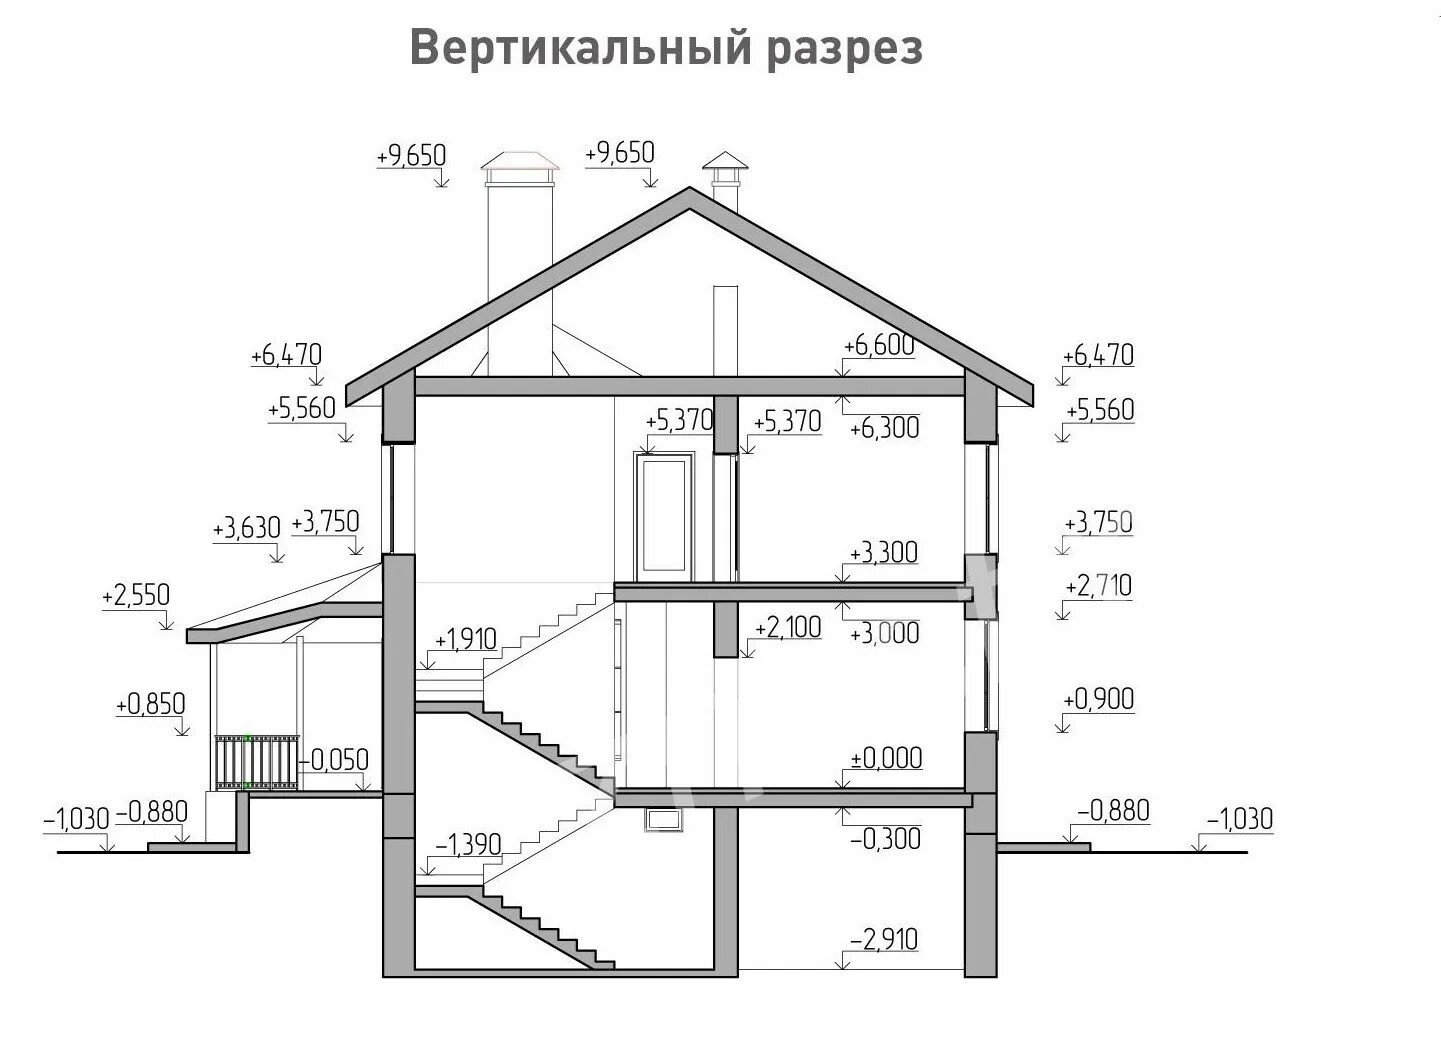 Средняя высота 2 этажа. Разрез двухэтажного дома по лестнице чертеж. Разрез лестницы чертеж. Разрез 2-2 жилого дома. Разрез здания чертеж двухэтажного дома.